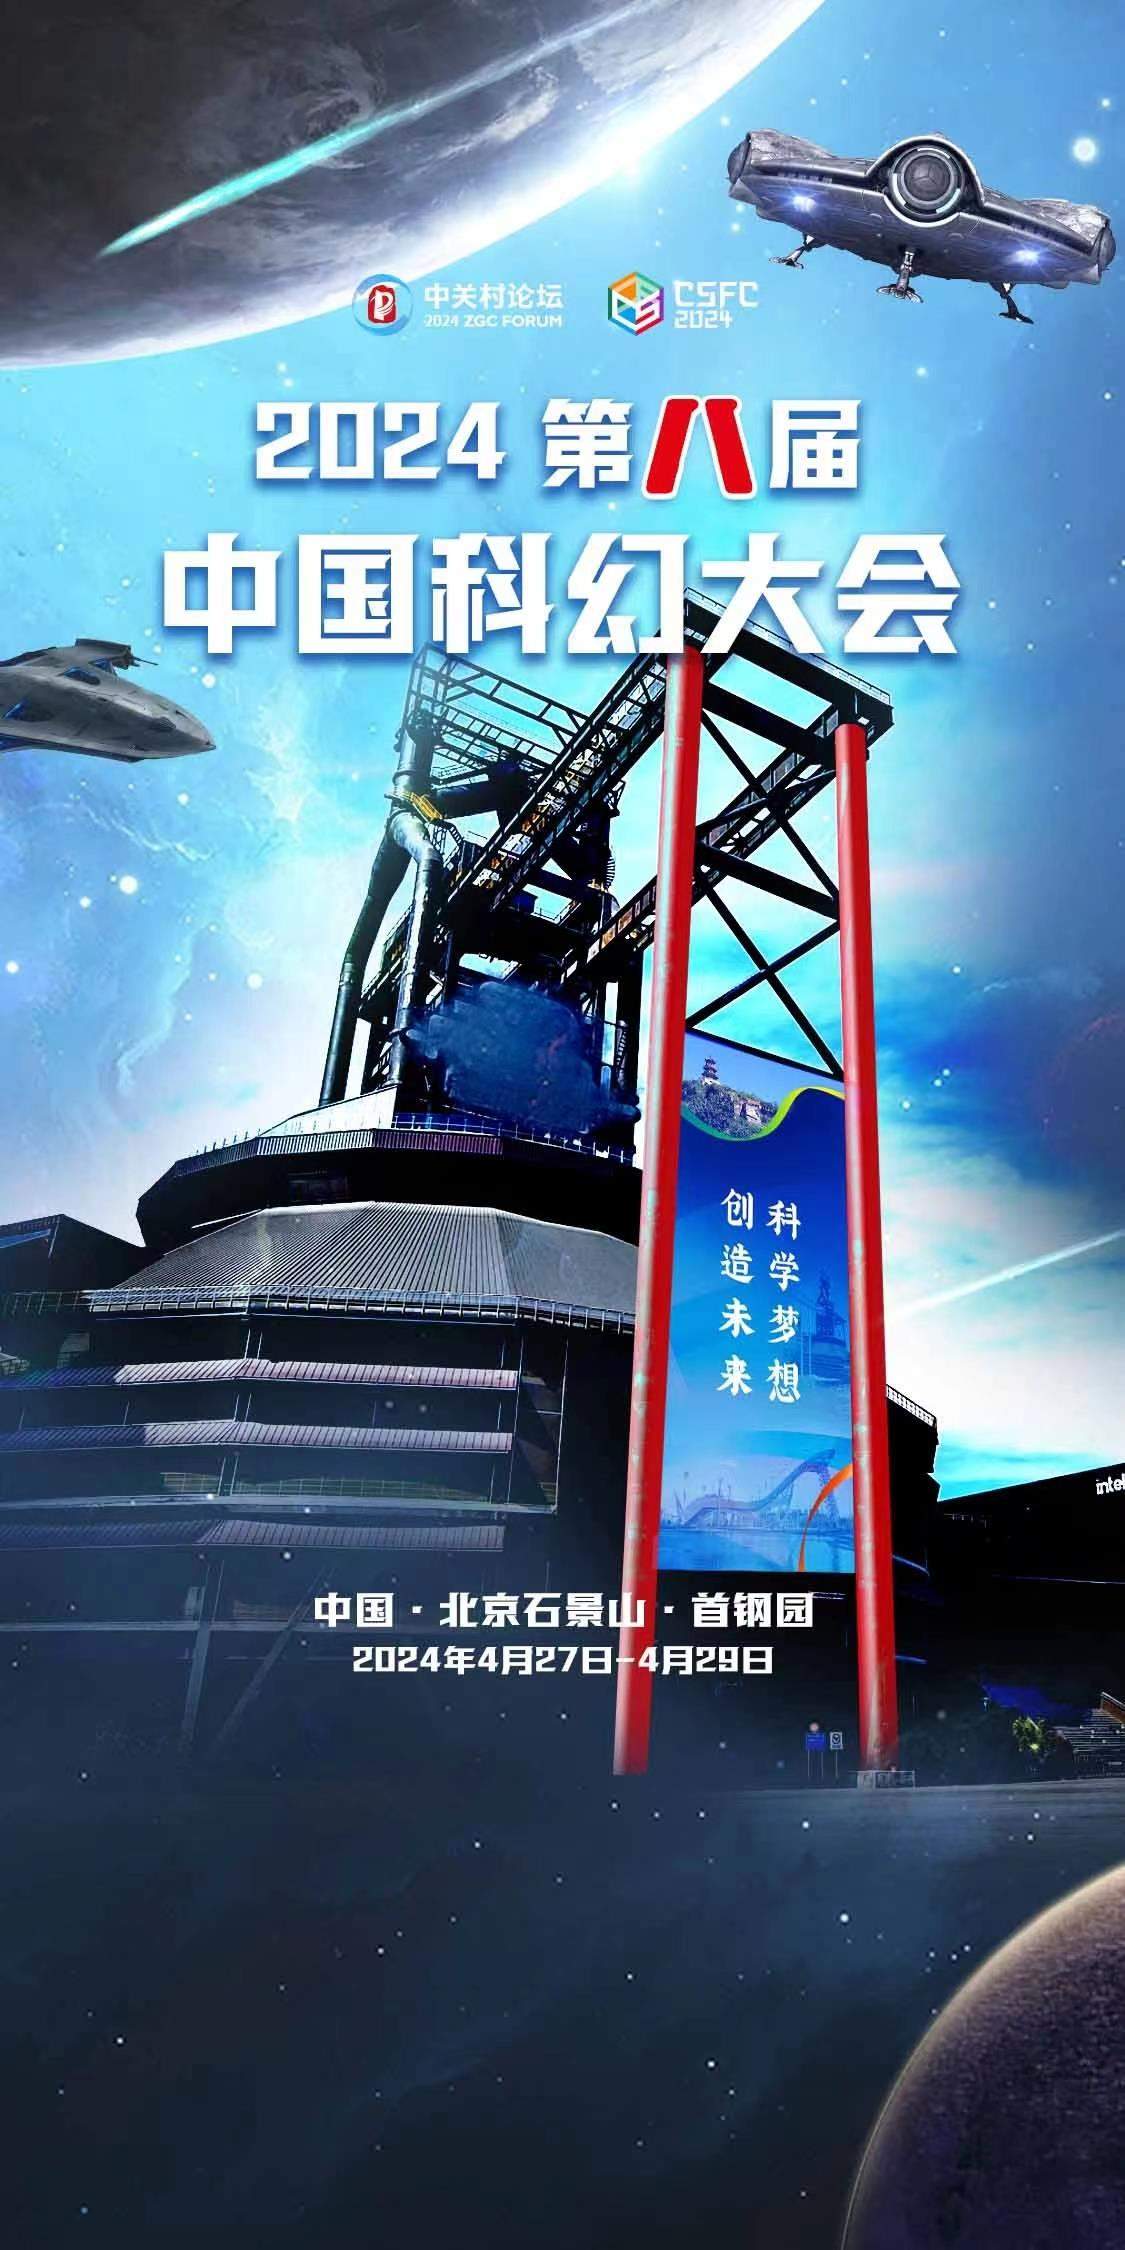 2024中国科幻大会开幕 科幻短片《地球大炮》《生命之歌》首次亮相